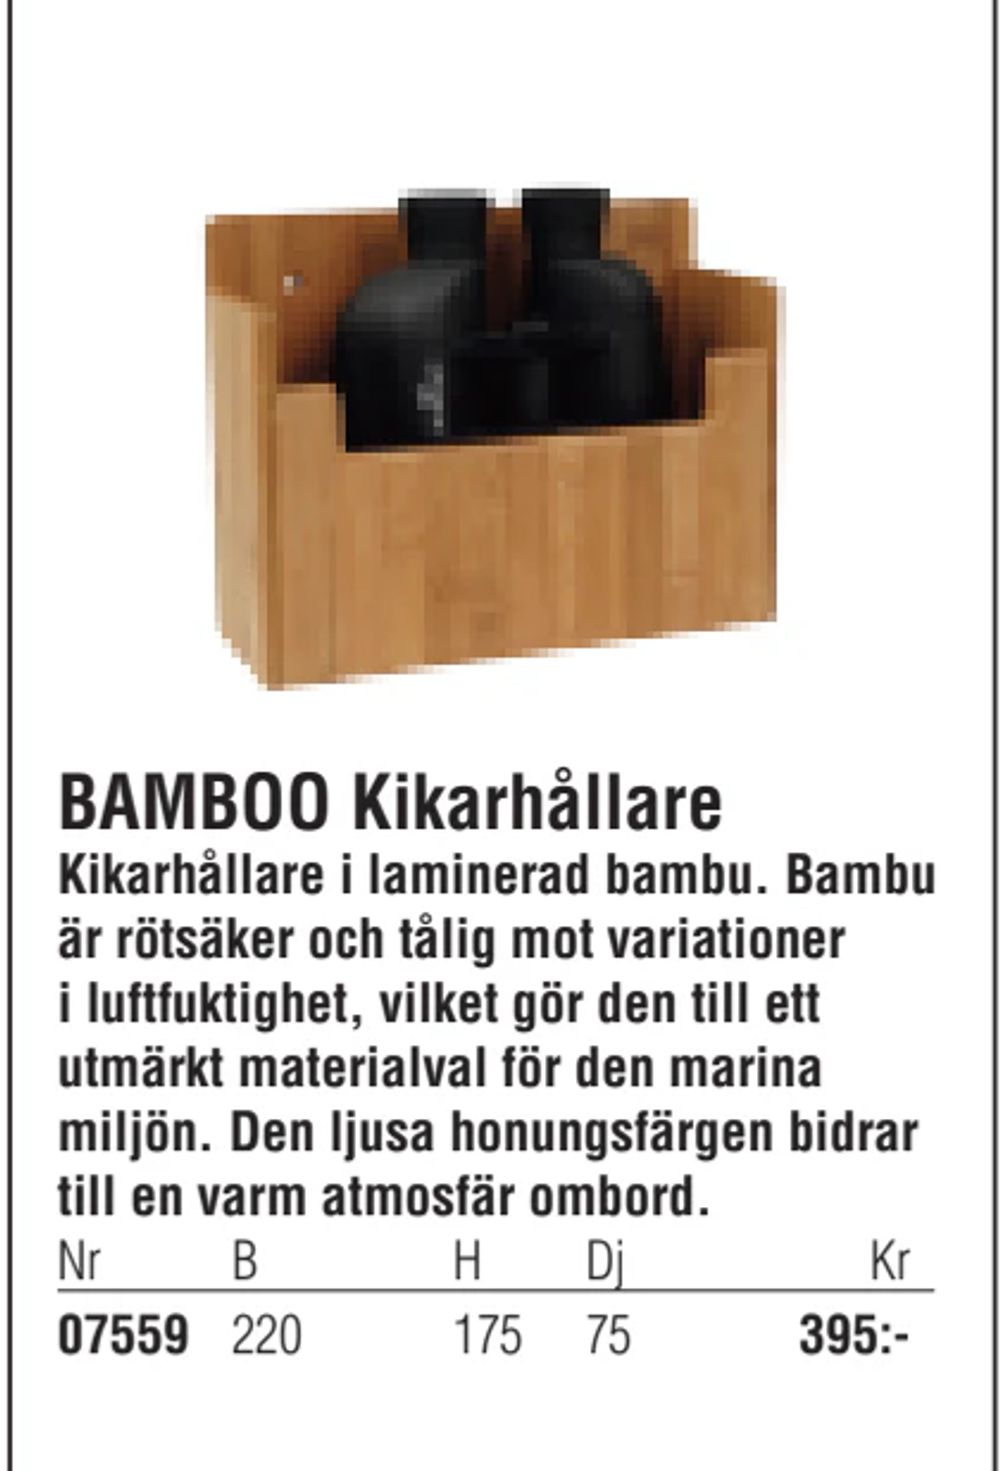 Erbjudanden på BAMBOO Kikarhållare från Erlandsons Brygga för 395 kr